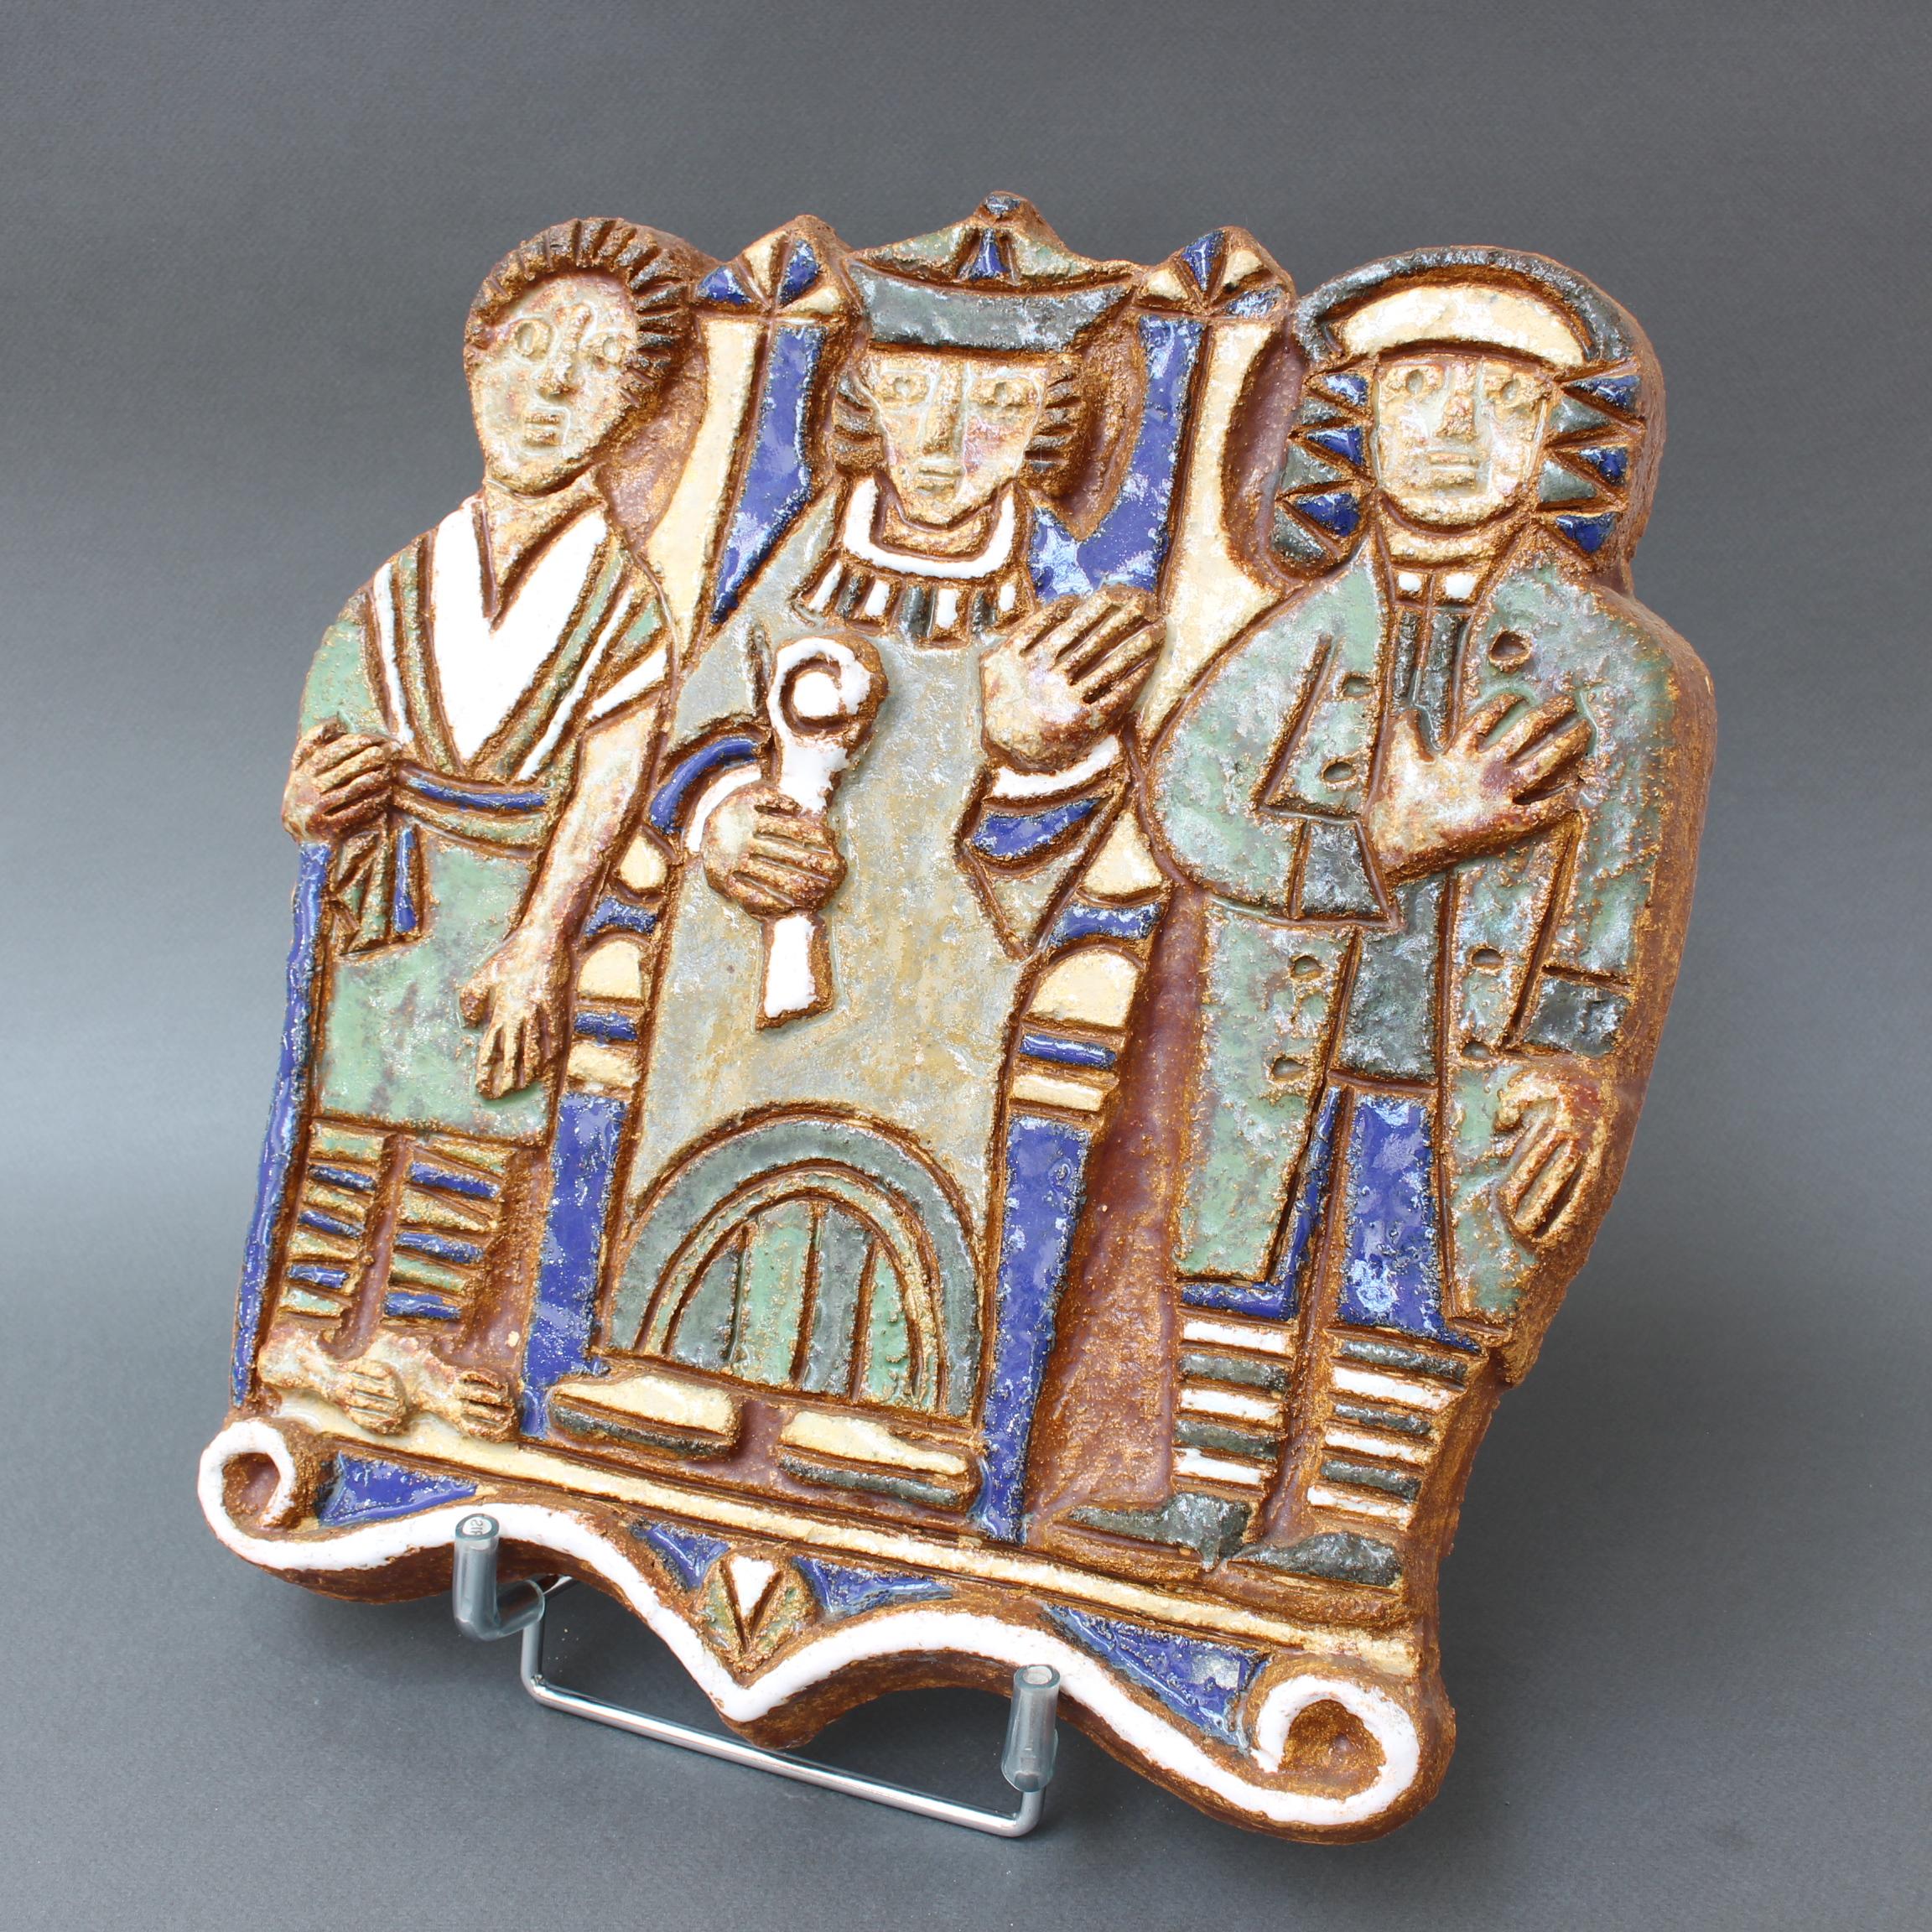 Dekorative französische Wandtafel aus Keramik mit drei Figuren, von Les Argonautes, Vallauris, Frankreich (um 1960). Ein erfrischend naives und charmantes Stück, das drei Männer in alten Gewändern und Hüten darstellt. Es ist Sache des Betrachters zu